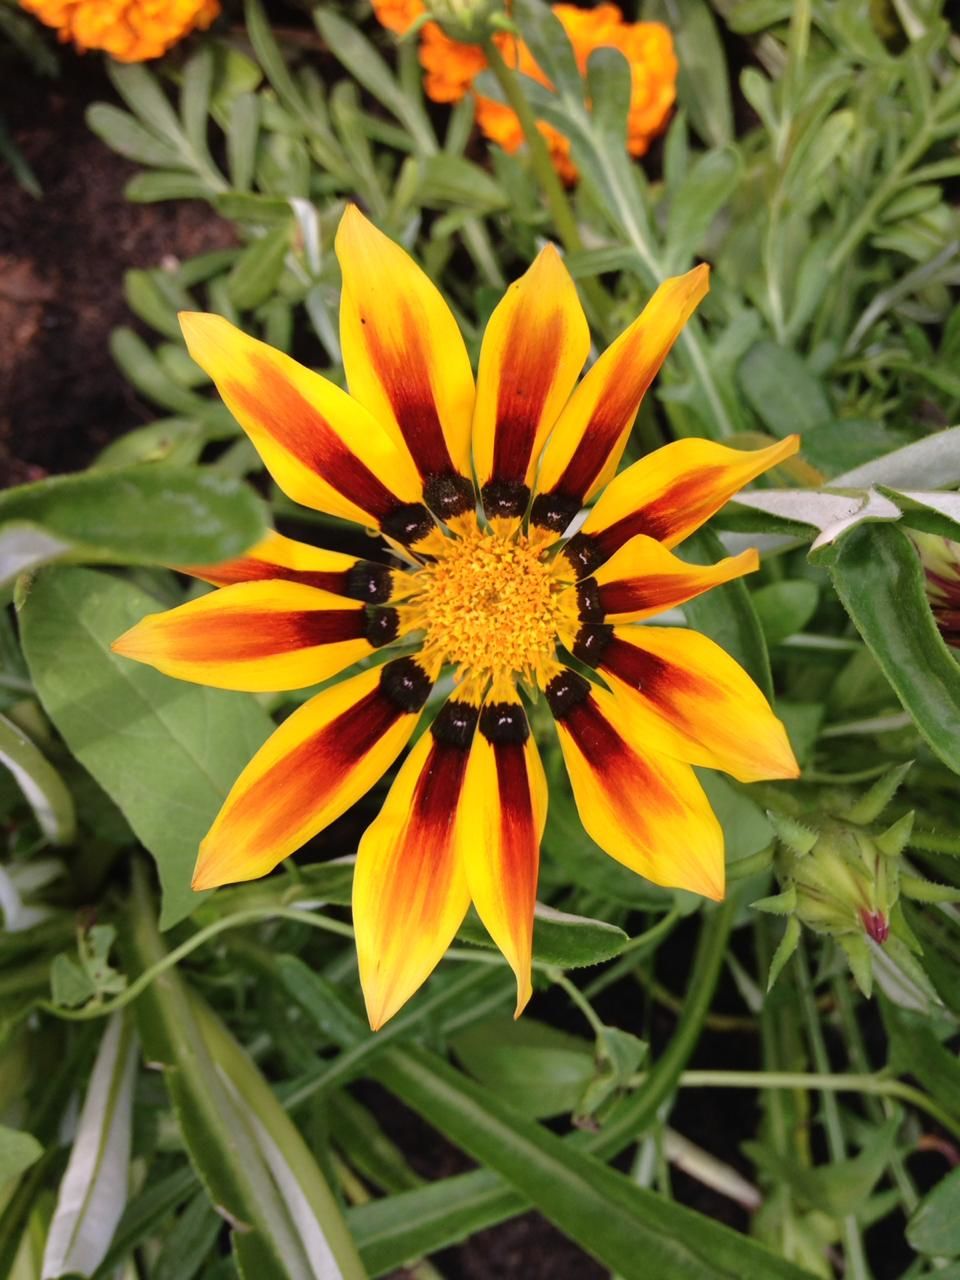 Участница нашего фотоконкурса «Цветы в моем саду»: "Цветы освещают нашу повседневную жизнь, делая ее прекрасной"